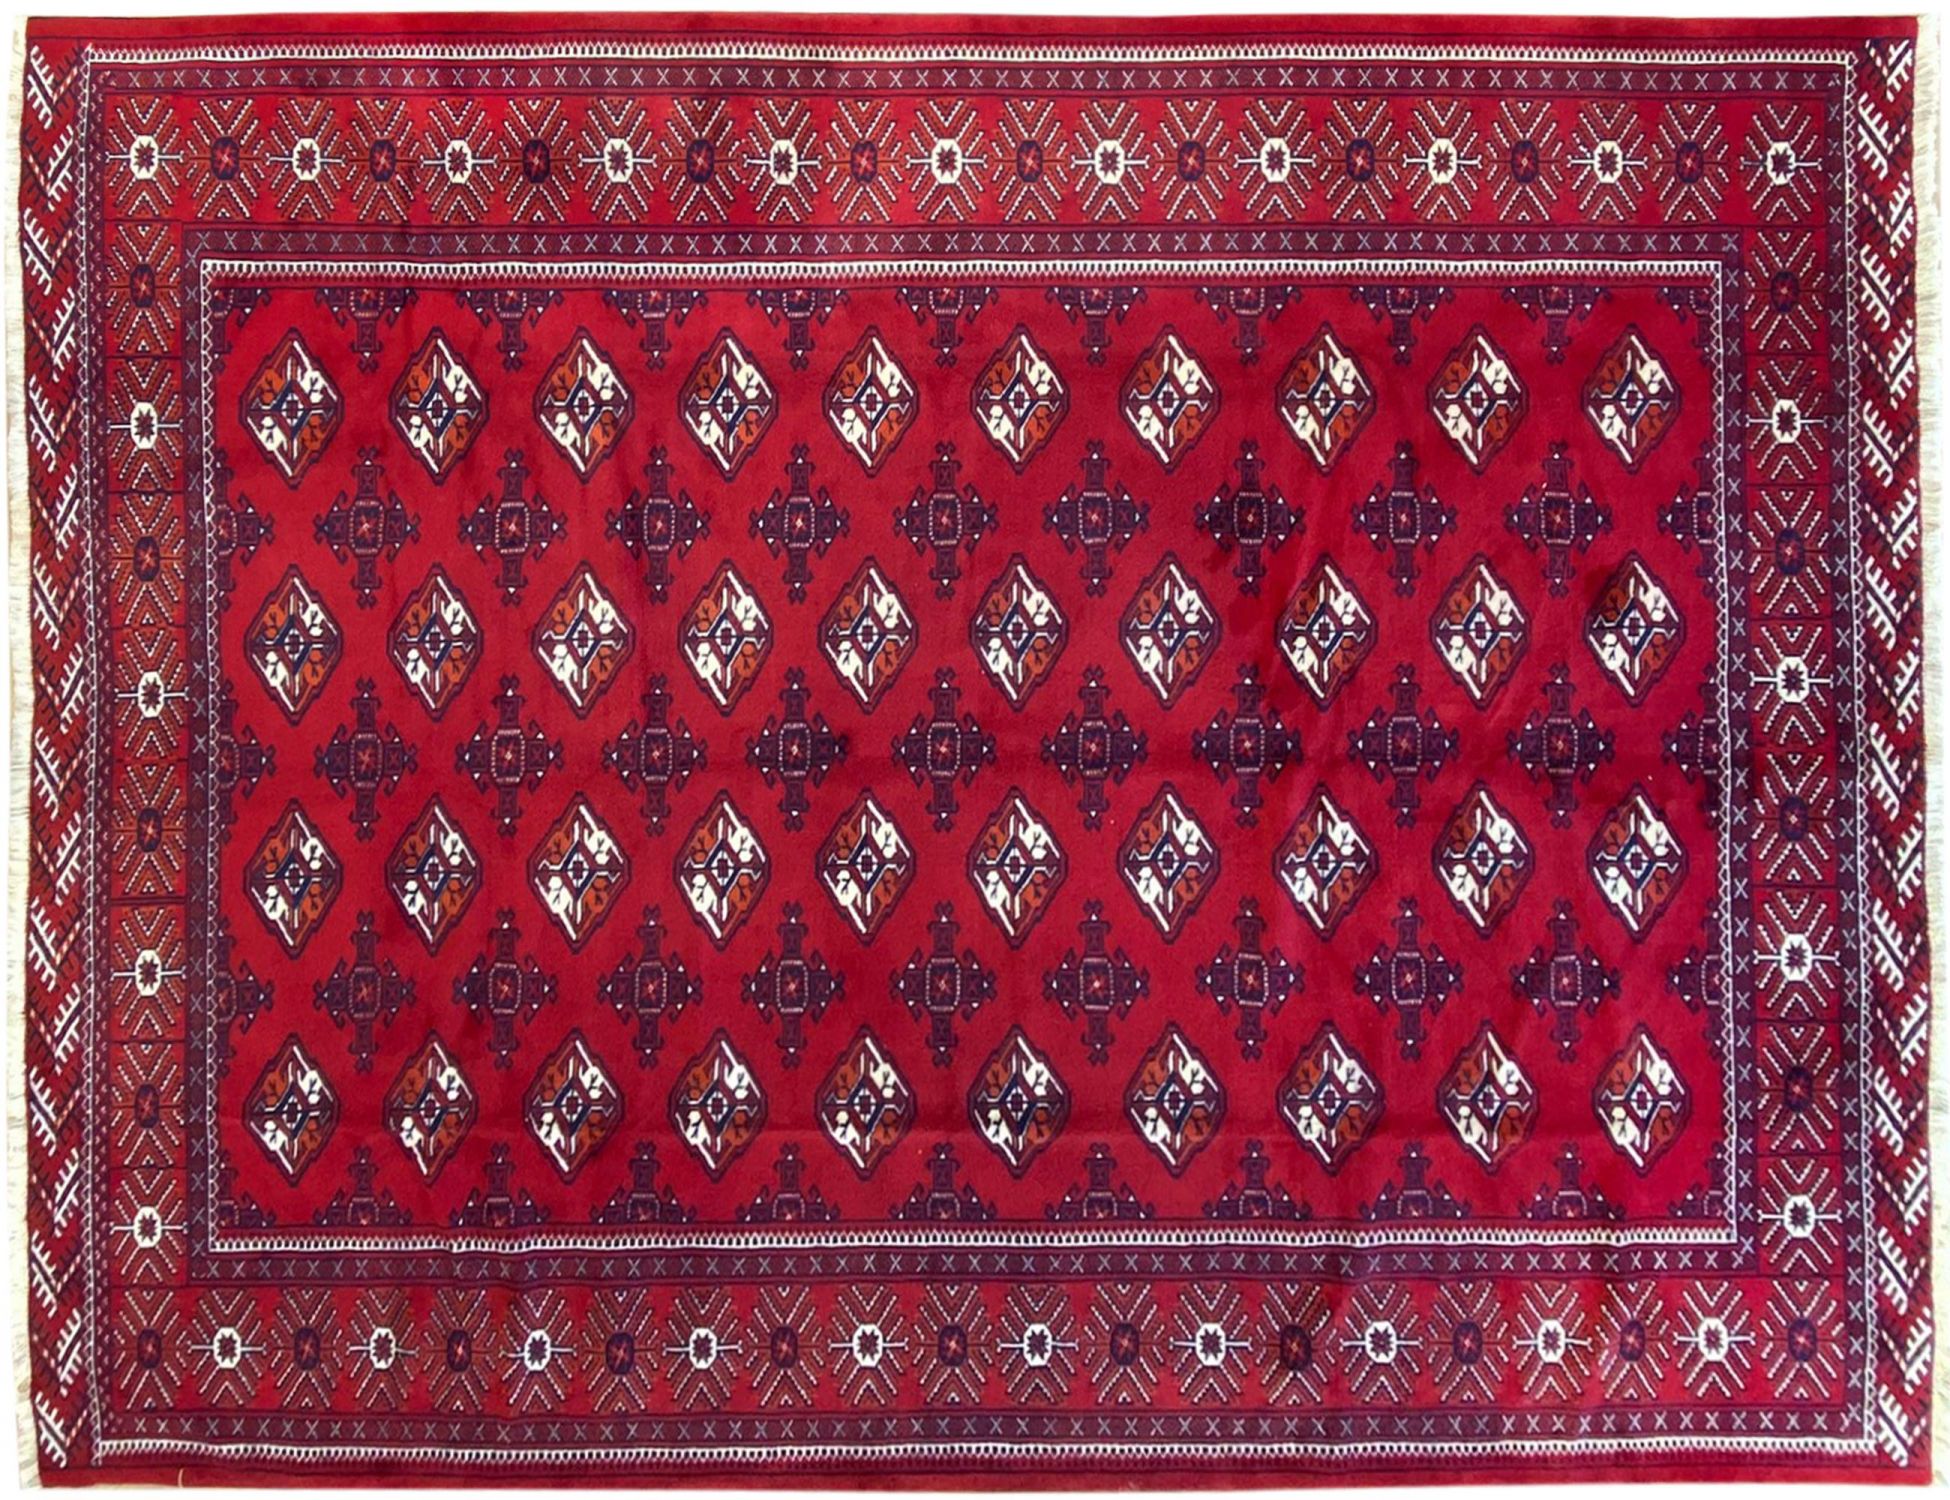 Περσικό    Κόκκινο <br/>333 x 260 cm